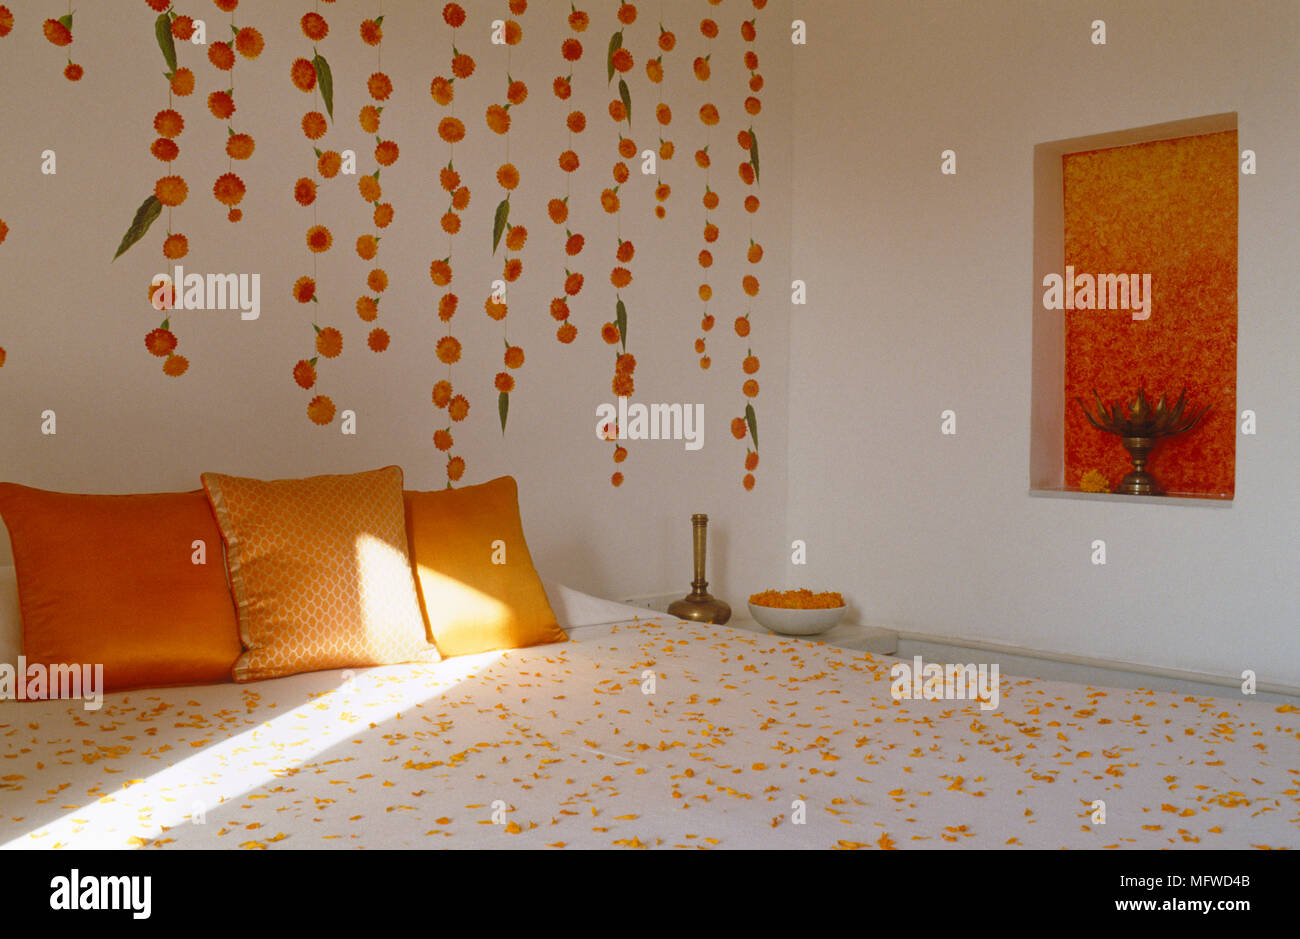 Coussins d'Orange sur un lit double avec effet peinture sur mur derrière Banque D'Images